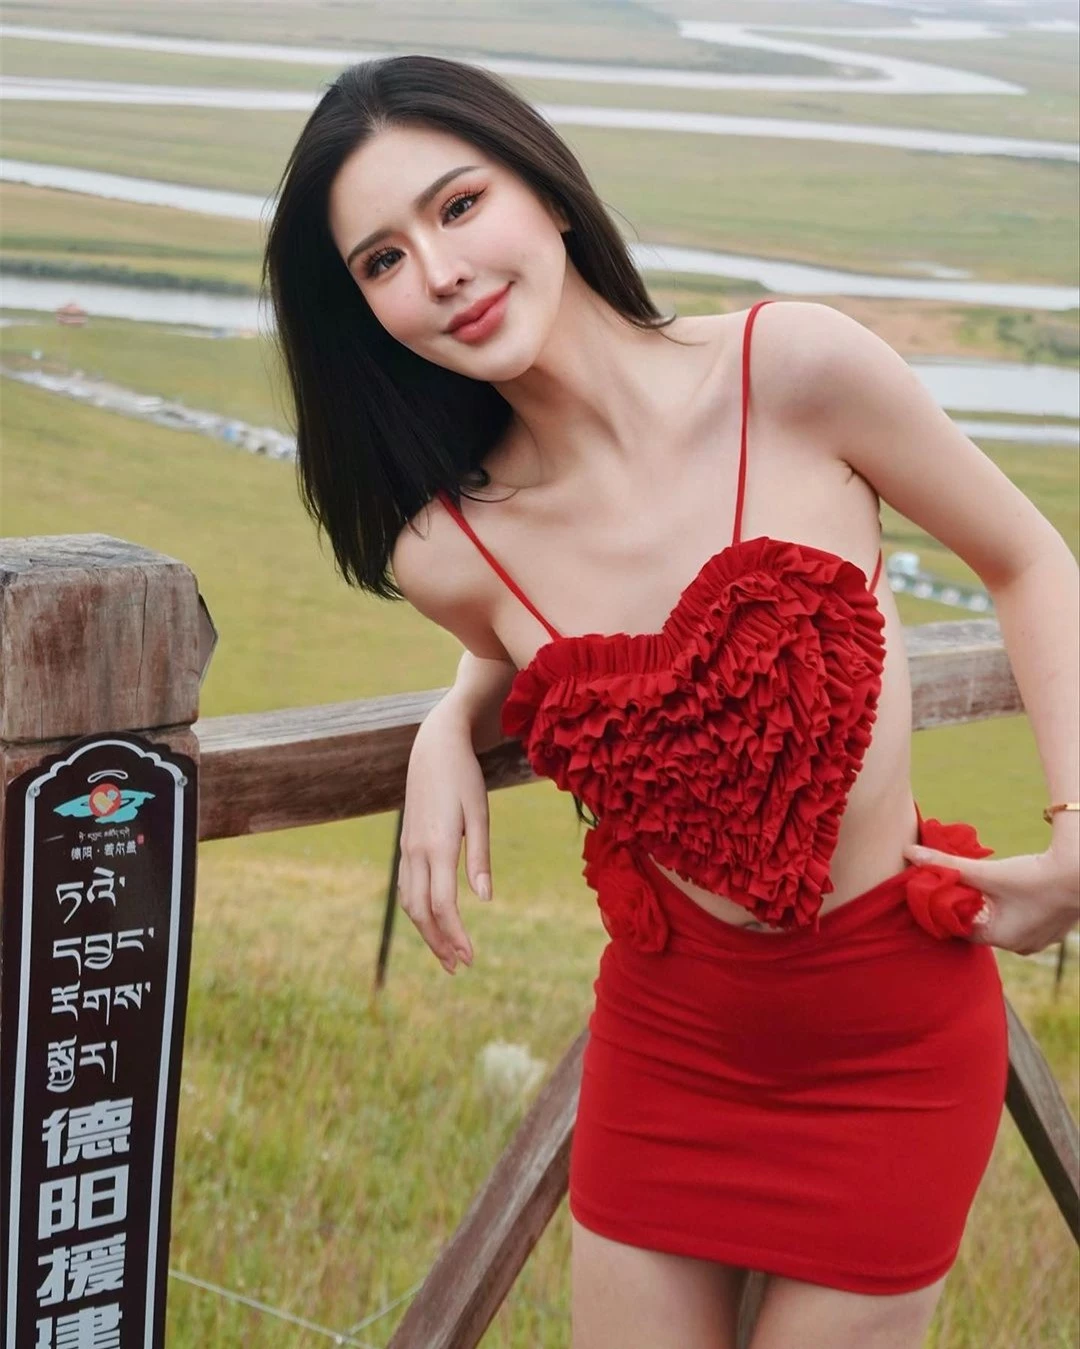 Nhan sắc nóng bỏng của người đẹp lai đăng quang Hoa hậu Hòa bình Phuket ảnh 24